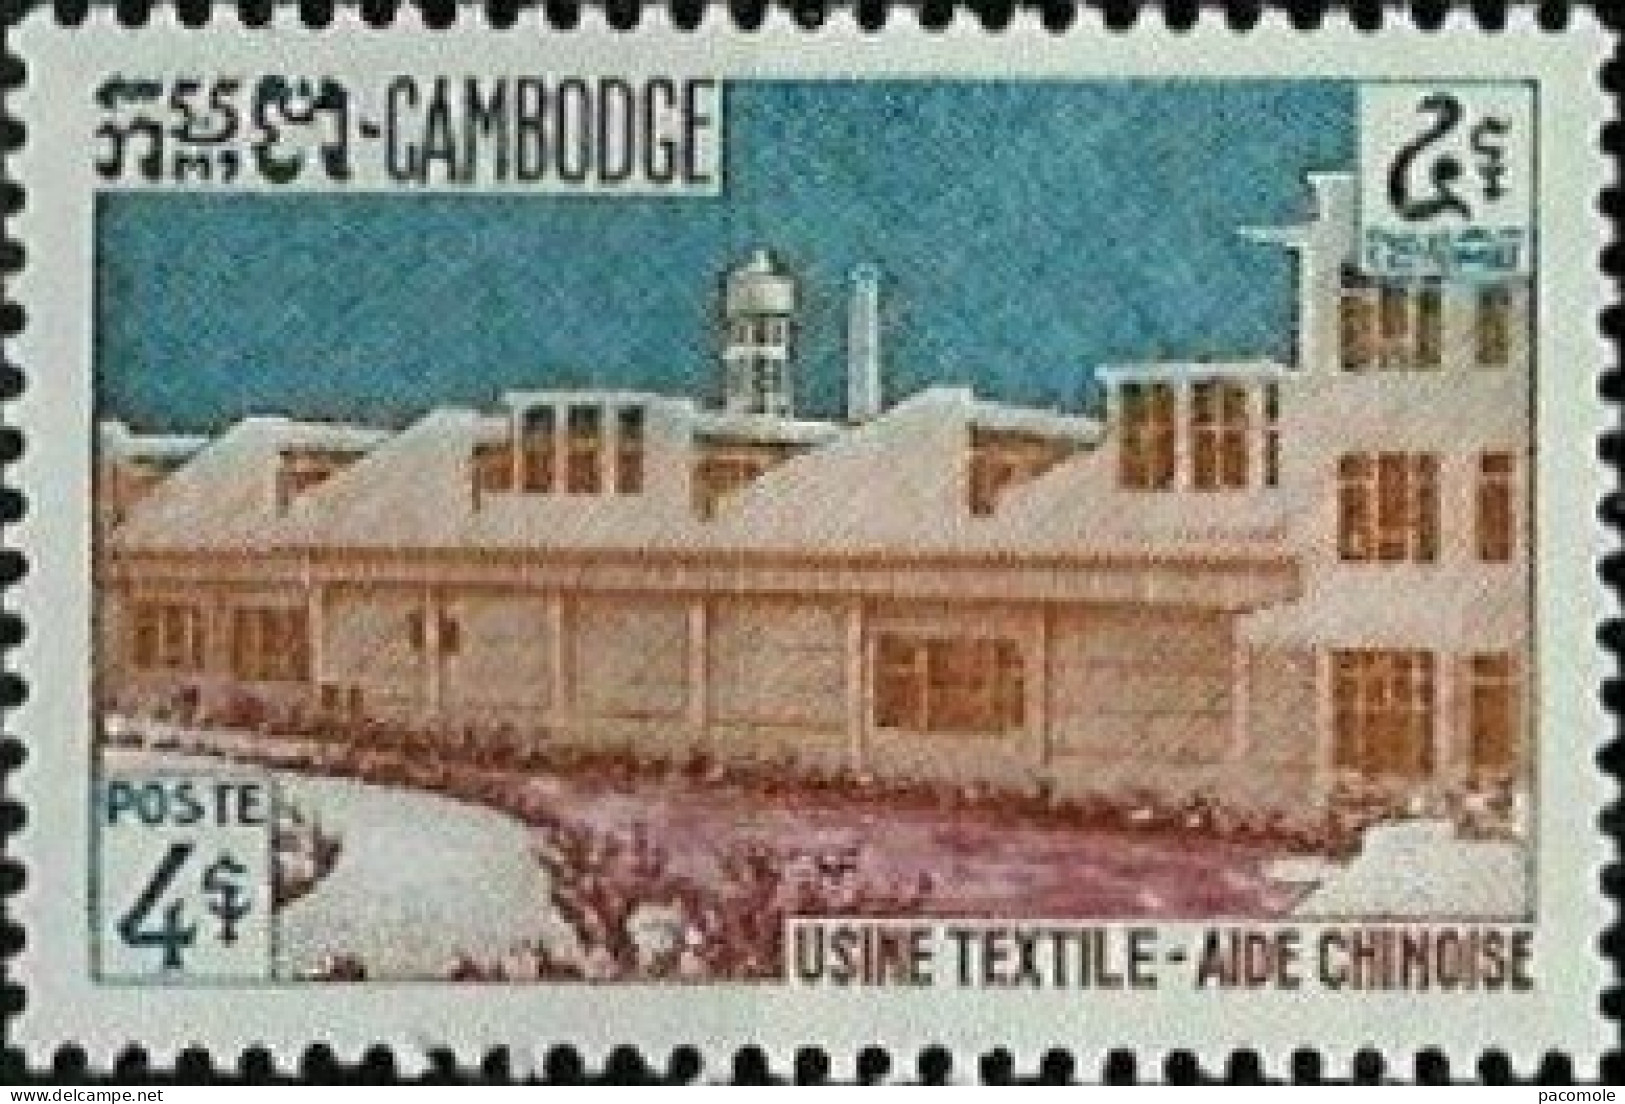 Cambodge - 1961 - Développement économique - Cambodia